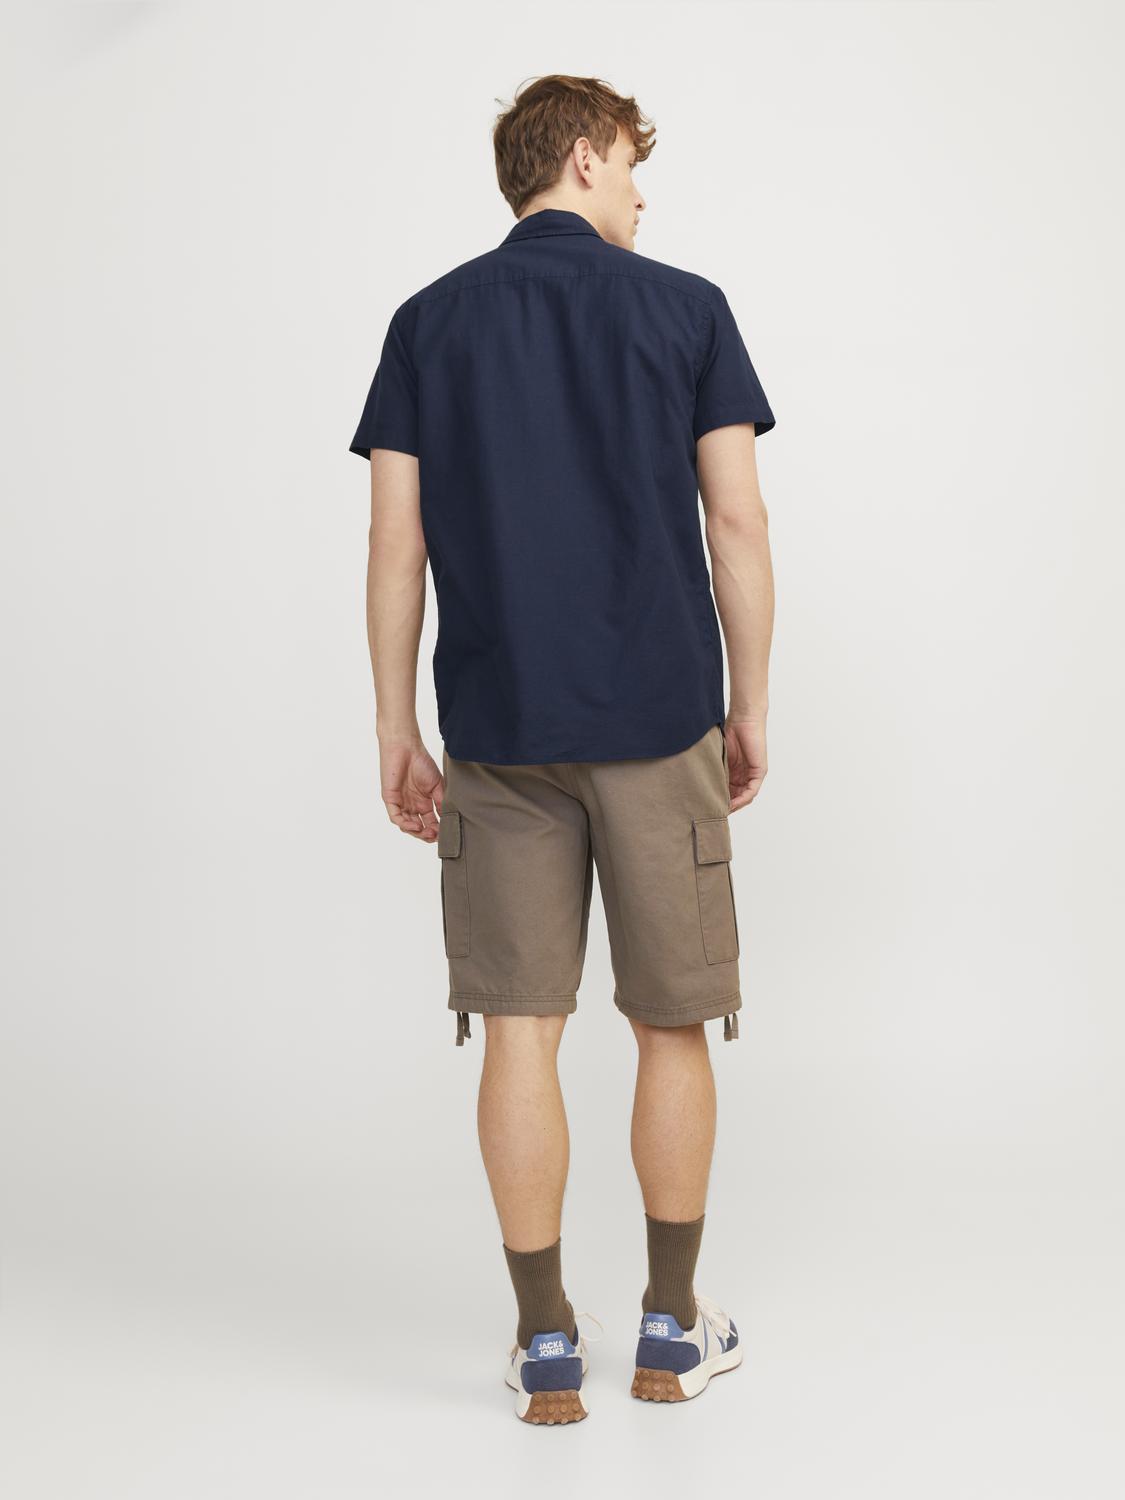 JJESUMMER Shirts - Navy Blazer